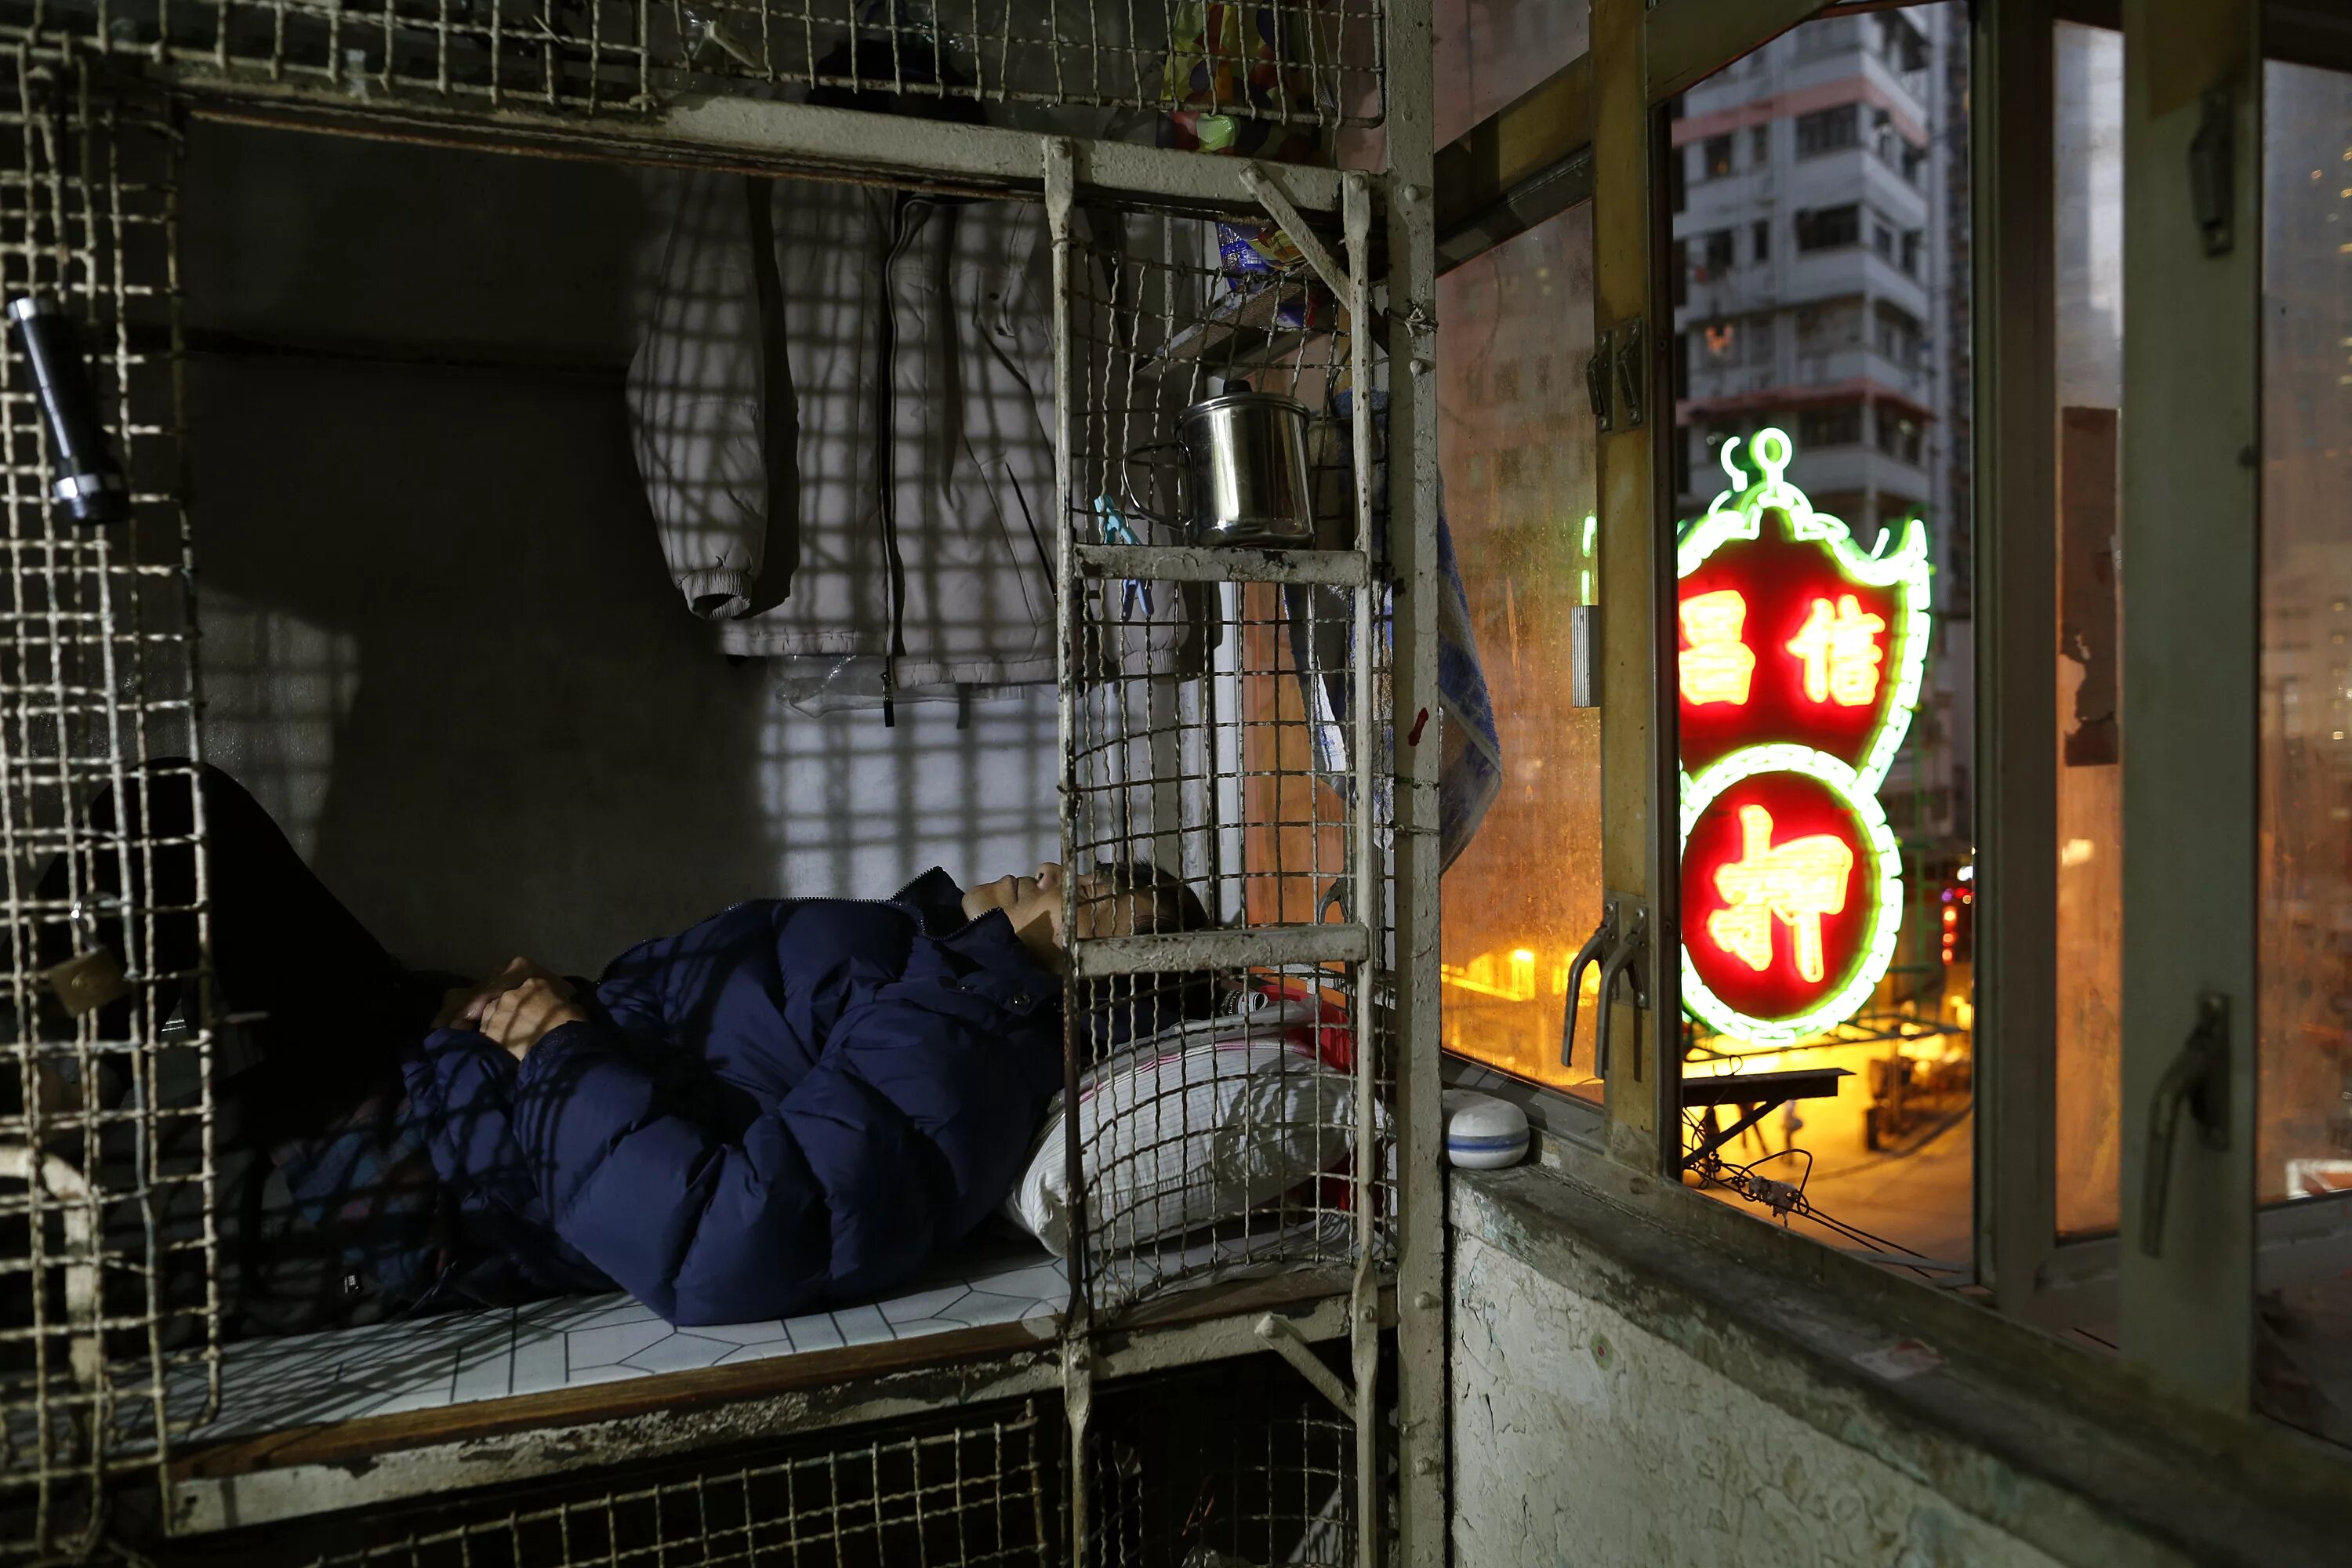 Снится квартира в которой жил раньше. Гонконг трущобы в клетках. Трущобы Гонконга внутри квартир. Люди живут в клетках в Гонконге.